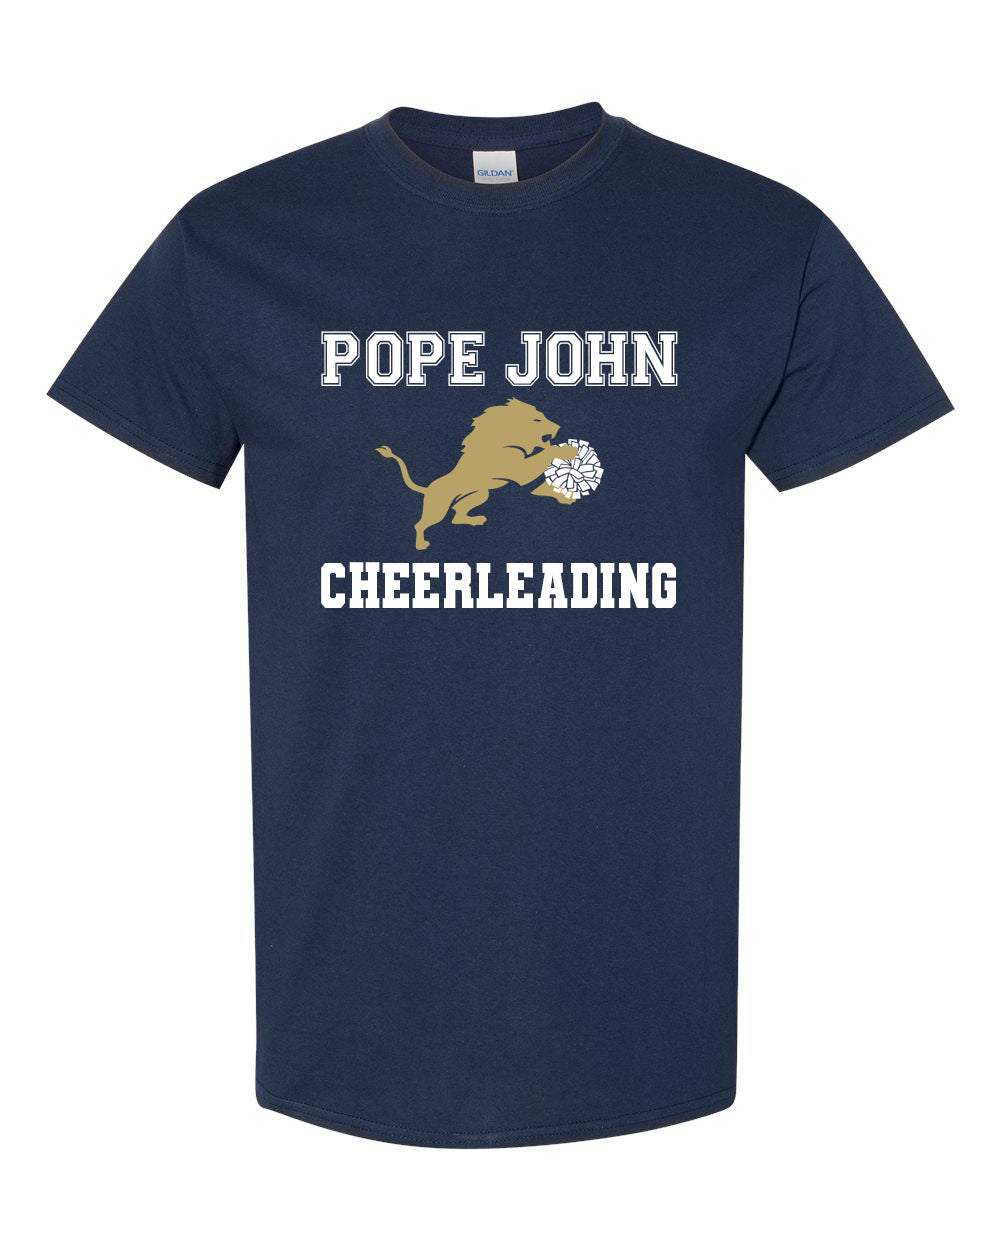 Pope John Cheer design 1 T-Shirt